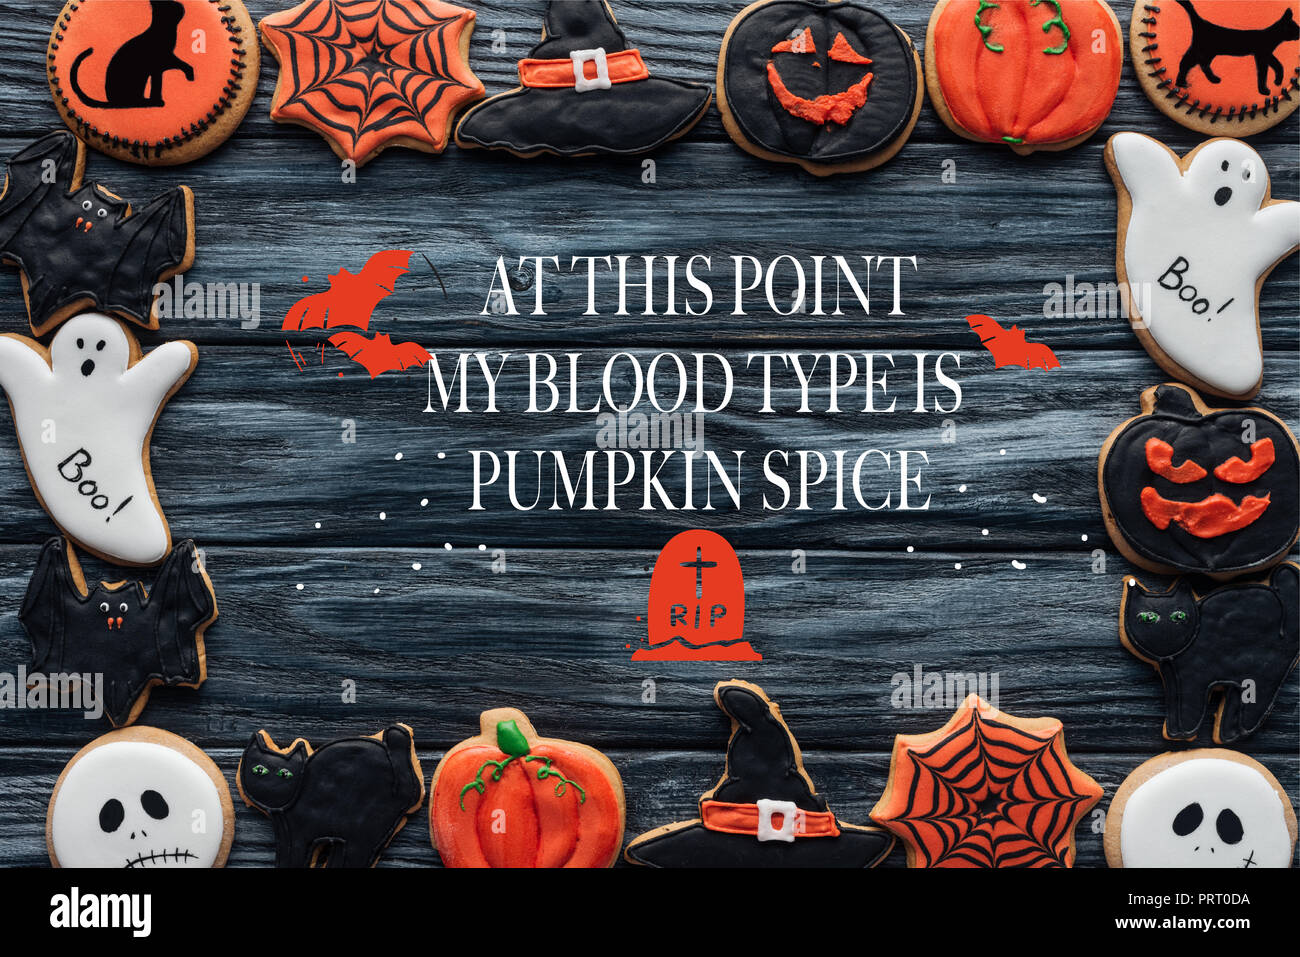 Rahmen aus Spooky Halloween hausgemachte Cookies auf schwarzen Hintergrund mit Holz' an dieser Stelle meine Blutgruppe ist Pumpkin spice' Schriftzug Stockfoto